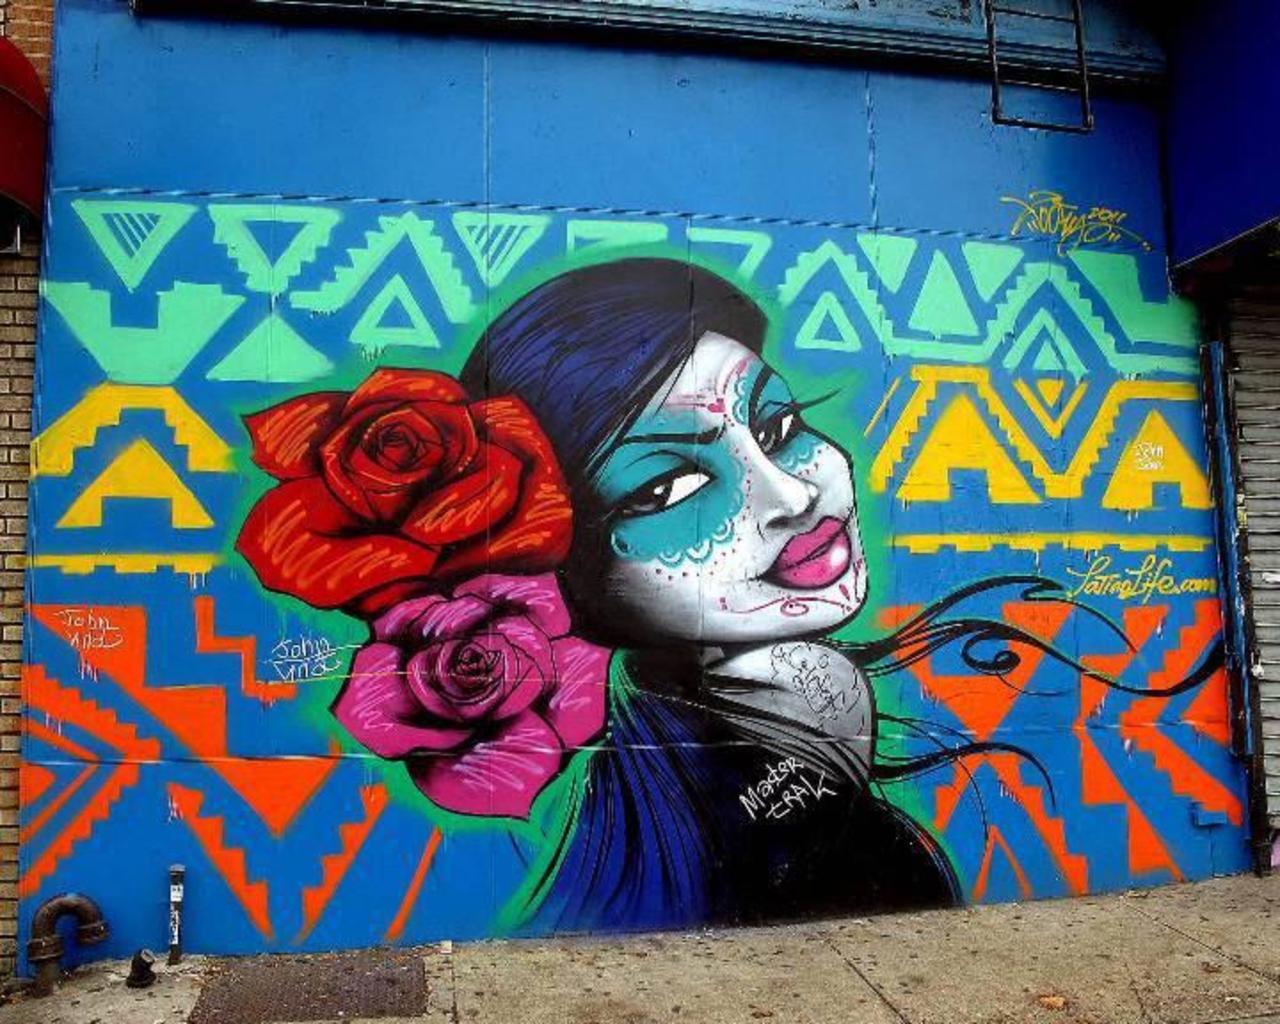 Toofly 
Williamsburg, Brooklyn
#streetart #art #graffiti #mural http://t.co/PAKqjQt541